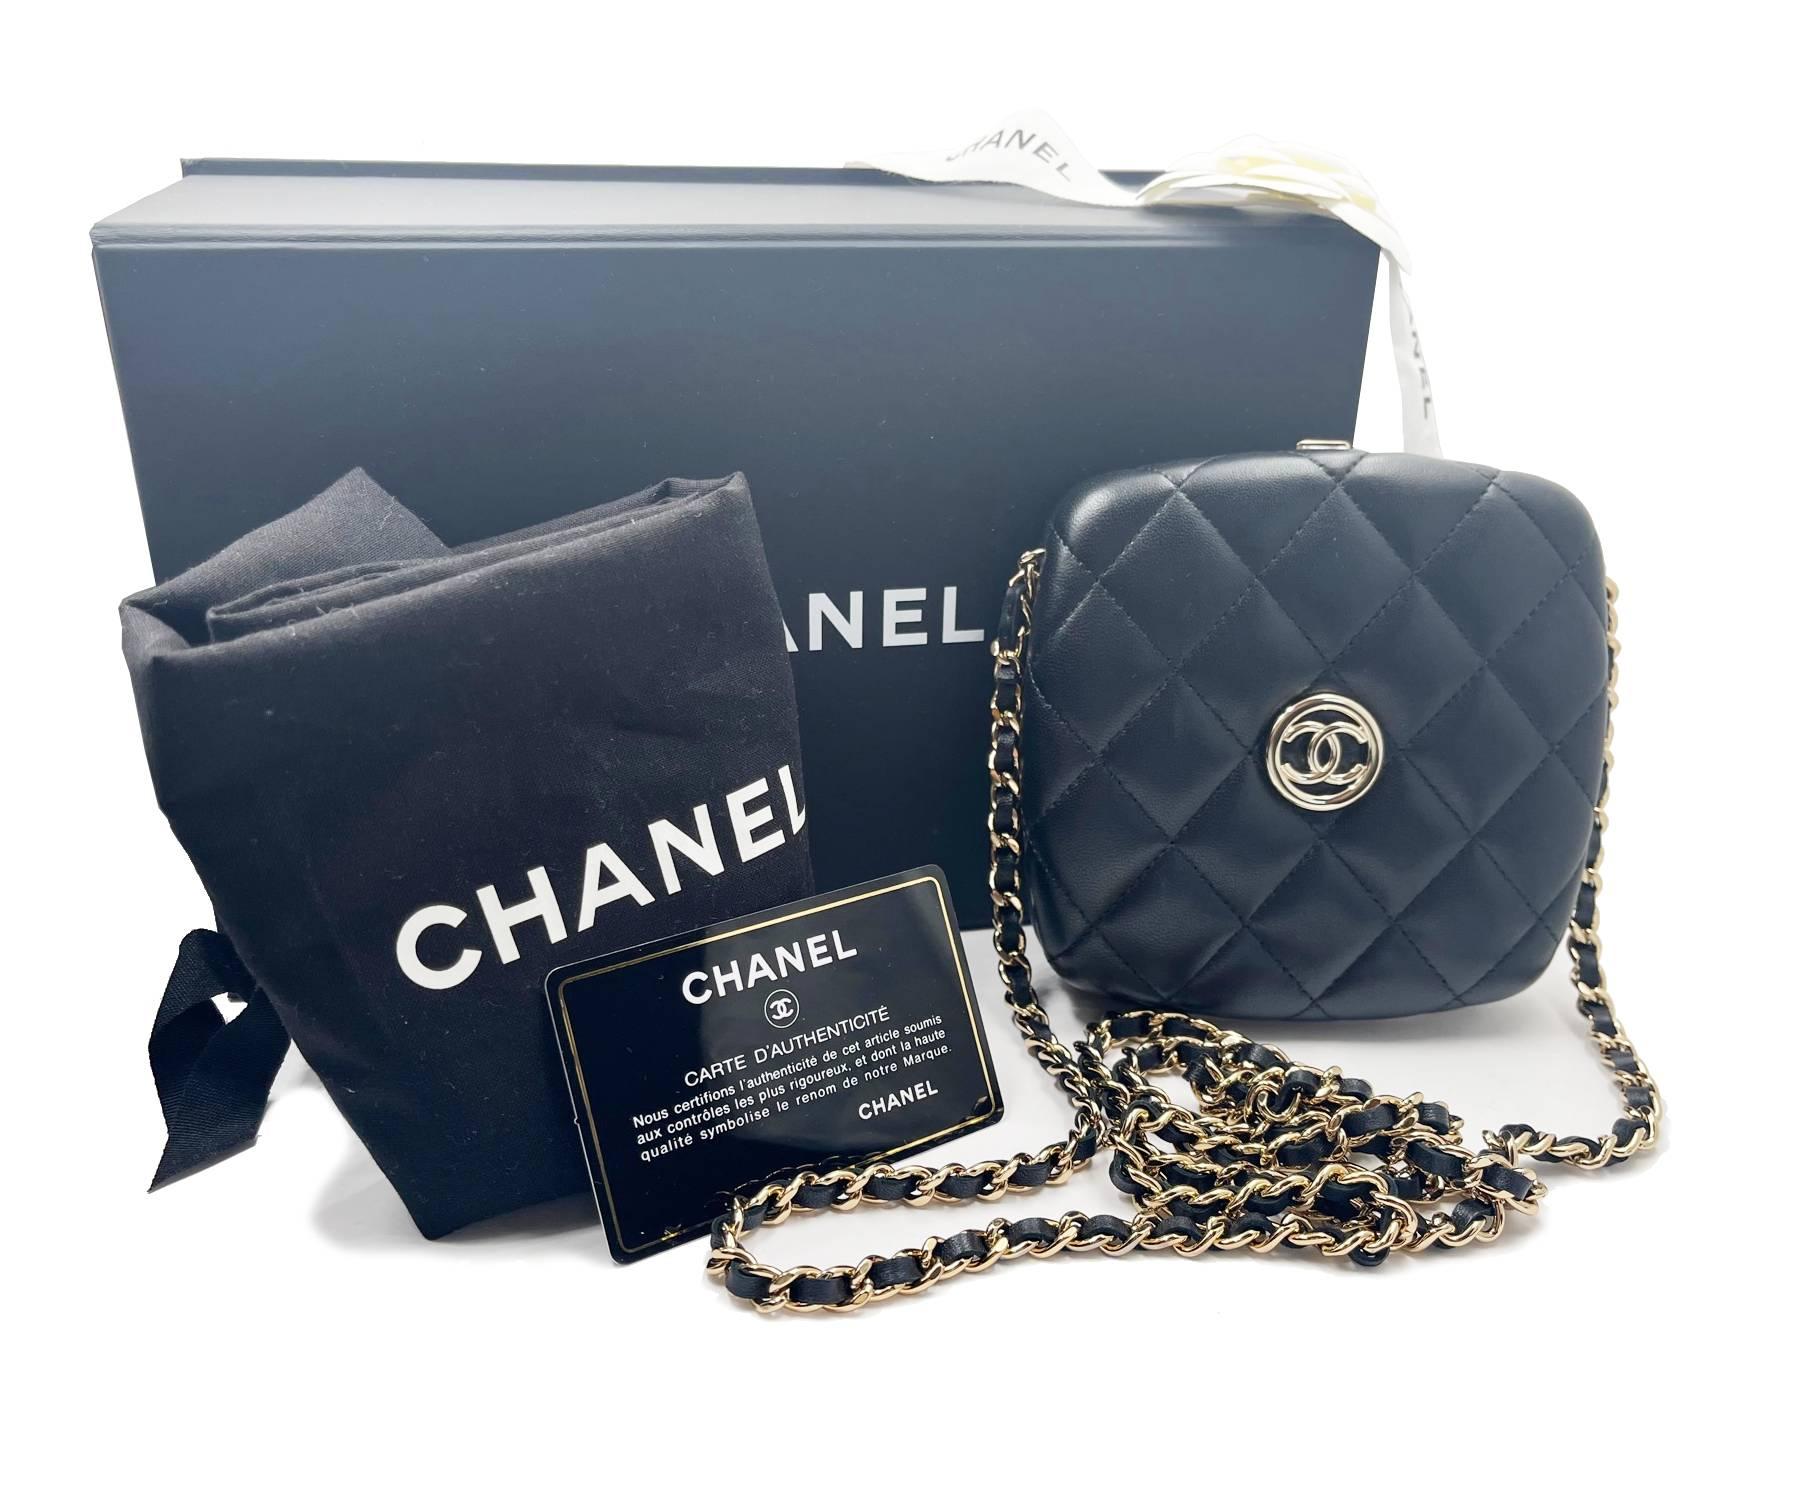 Chanel Brand New Black Quilted Hard Case Compact Vanity Crossbody Bag

*Markierung 3208XXXX
*Hergestellt in Frankreich
*Lieferung mit Originalverpackung, Etui, Kontrollnummernkarte, Band und Blume
*Fabrikneu

-Er ist ungefähr 5″ x 5″ x 1,25″